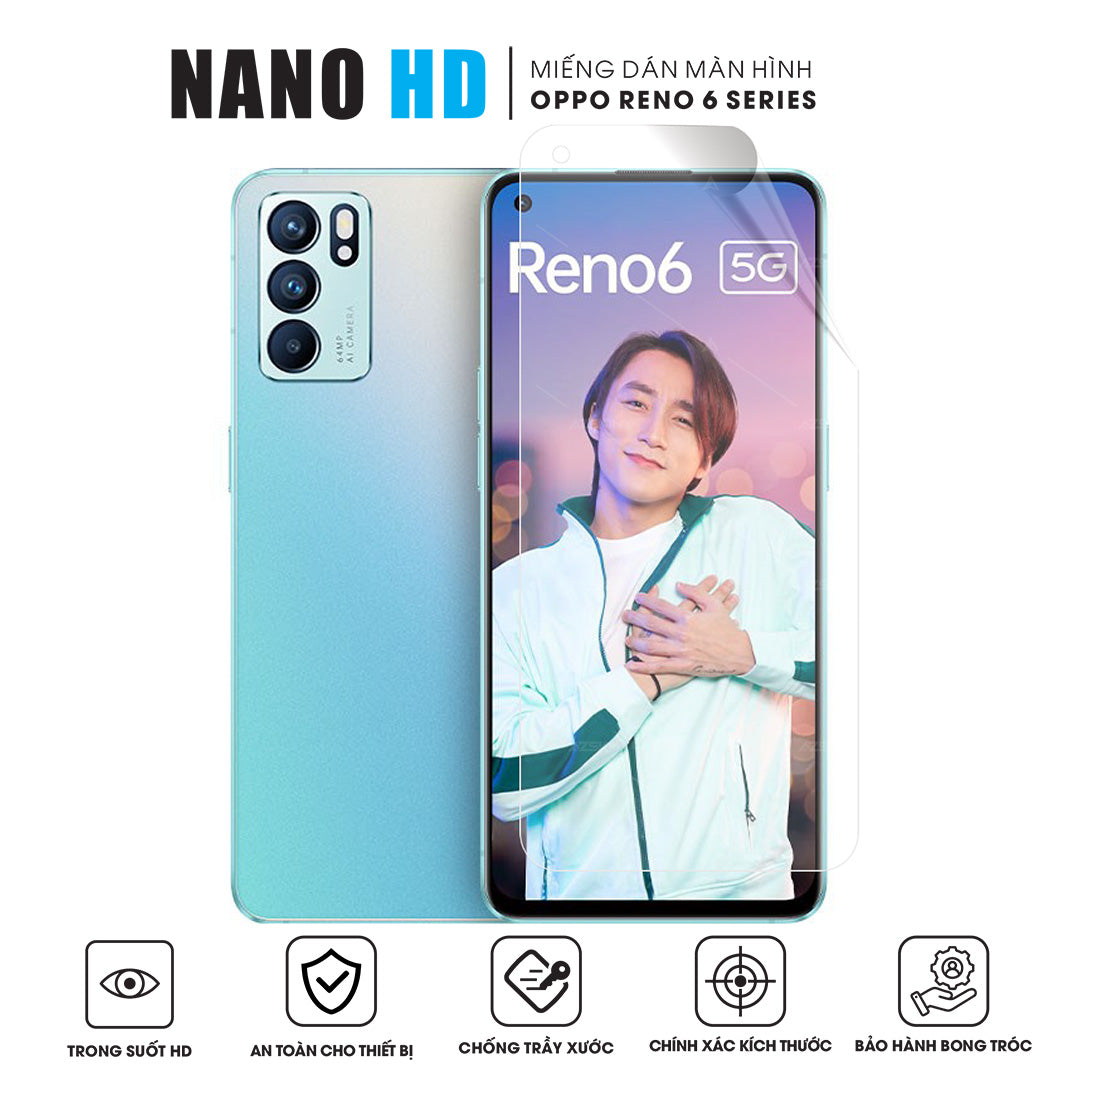 Miếng dán màn hình NANO HD cho OPPO Reno6